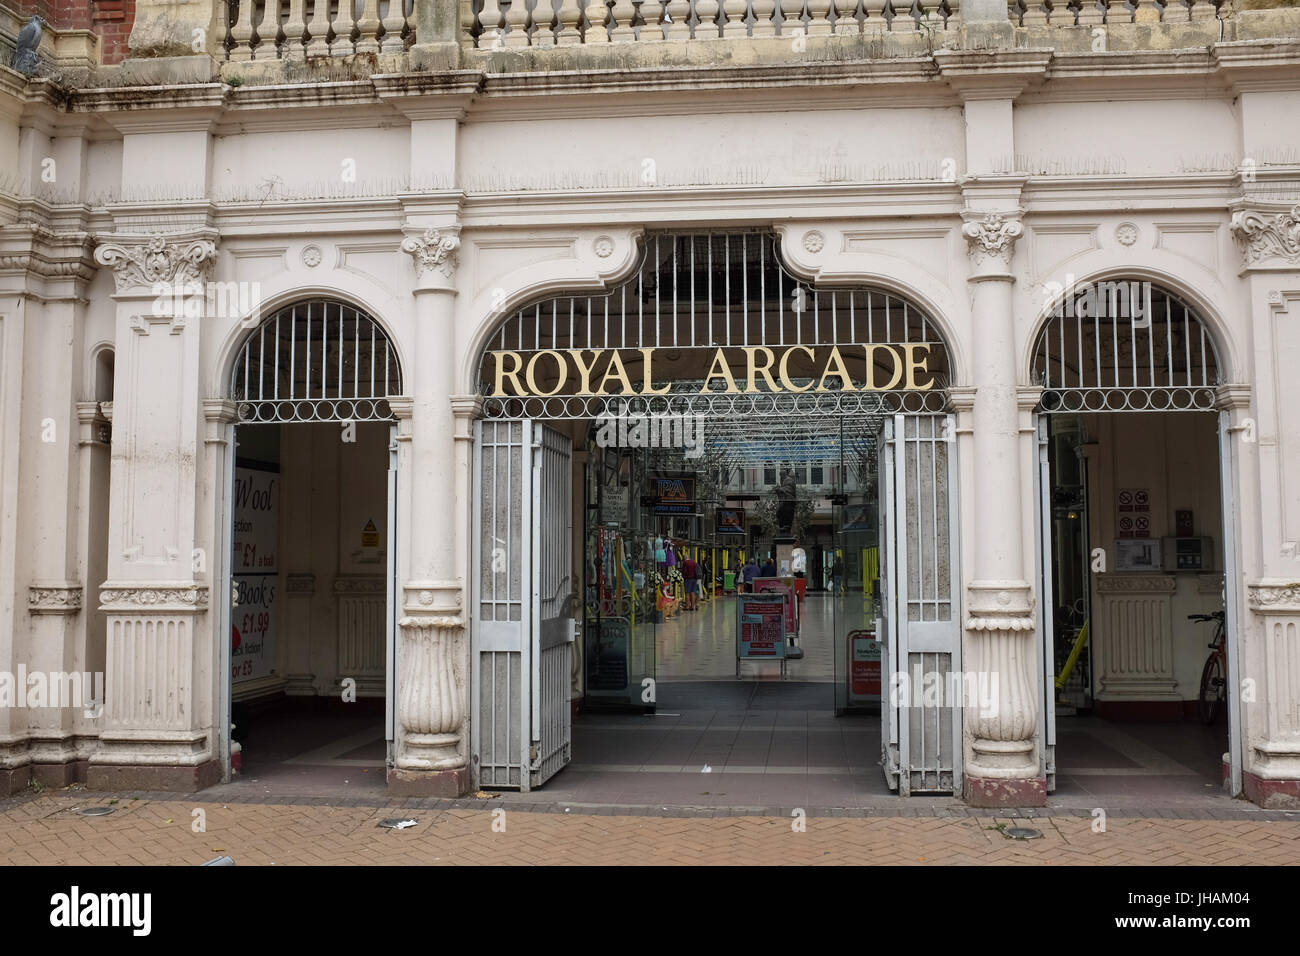 L'entrée de la Royal Arcade arcade commerçante de Boscombe, près de Bournemouth, Dorset, Angleterre. Banque D'Images